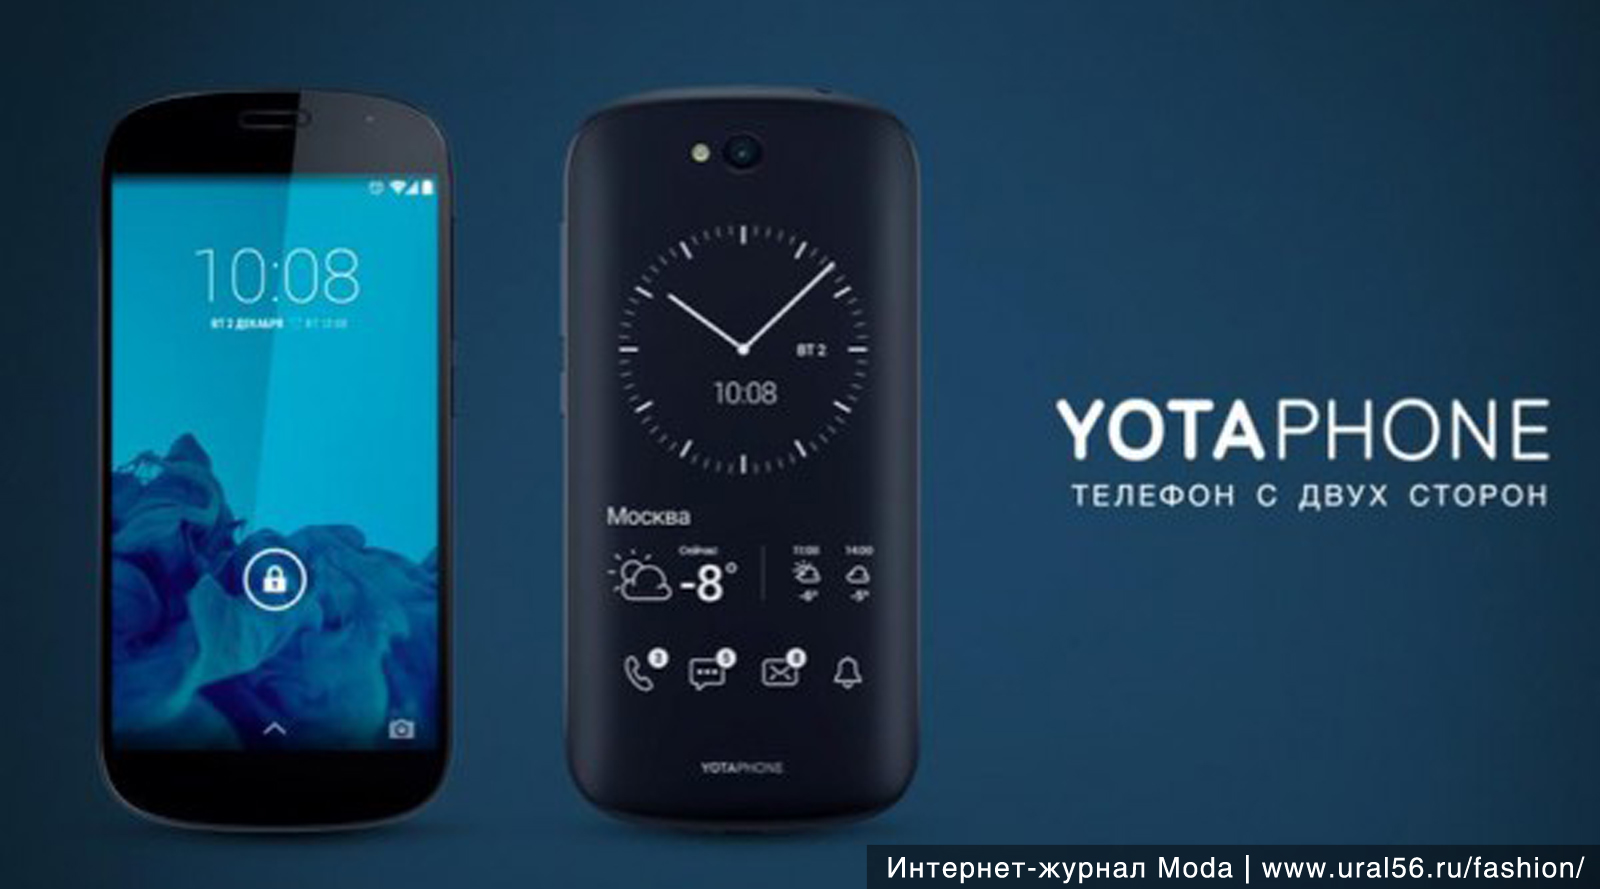 Телефон два экрана цена. Йотафон 2. Yota телефон с 2 экранами. YOTAPHONE 1. Российский смартфон YOTAPHONE.